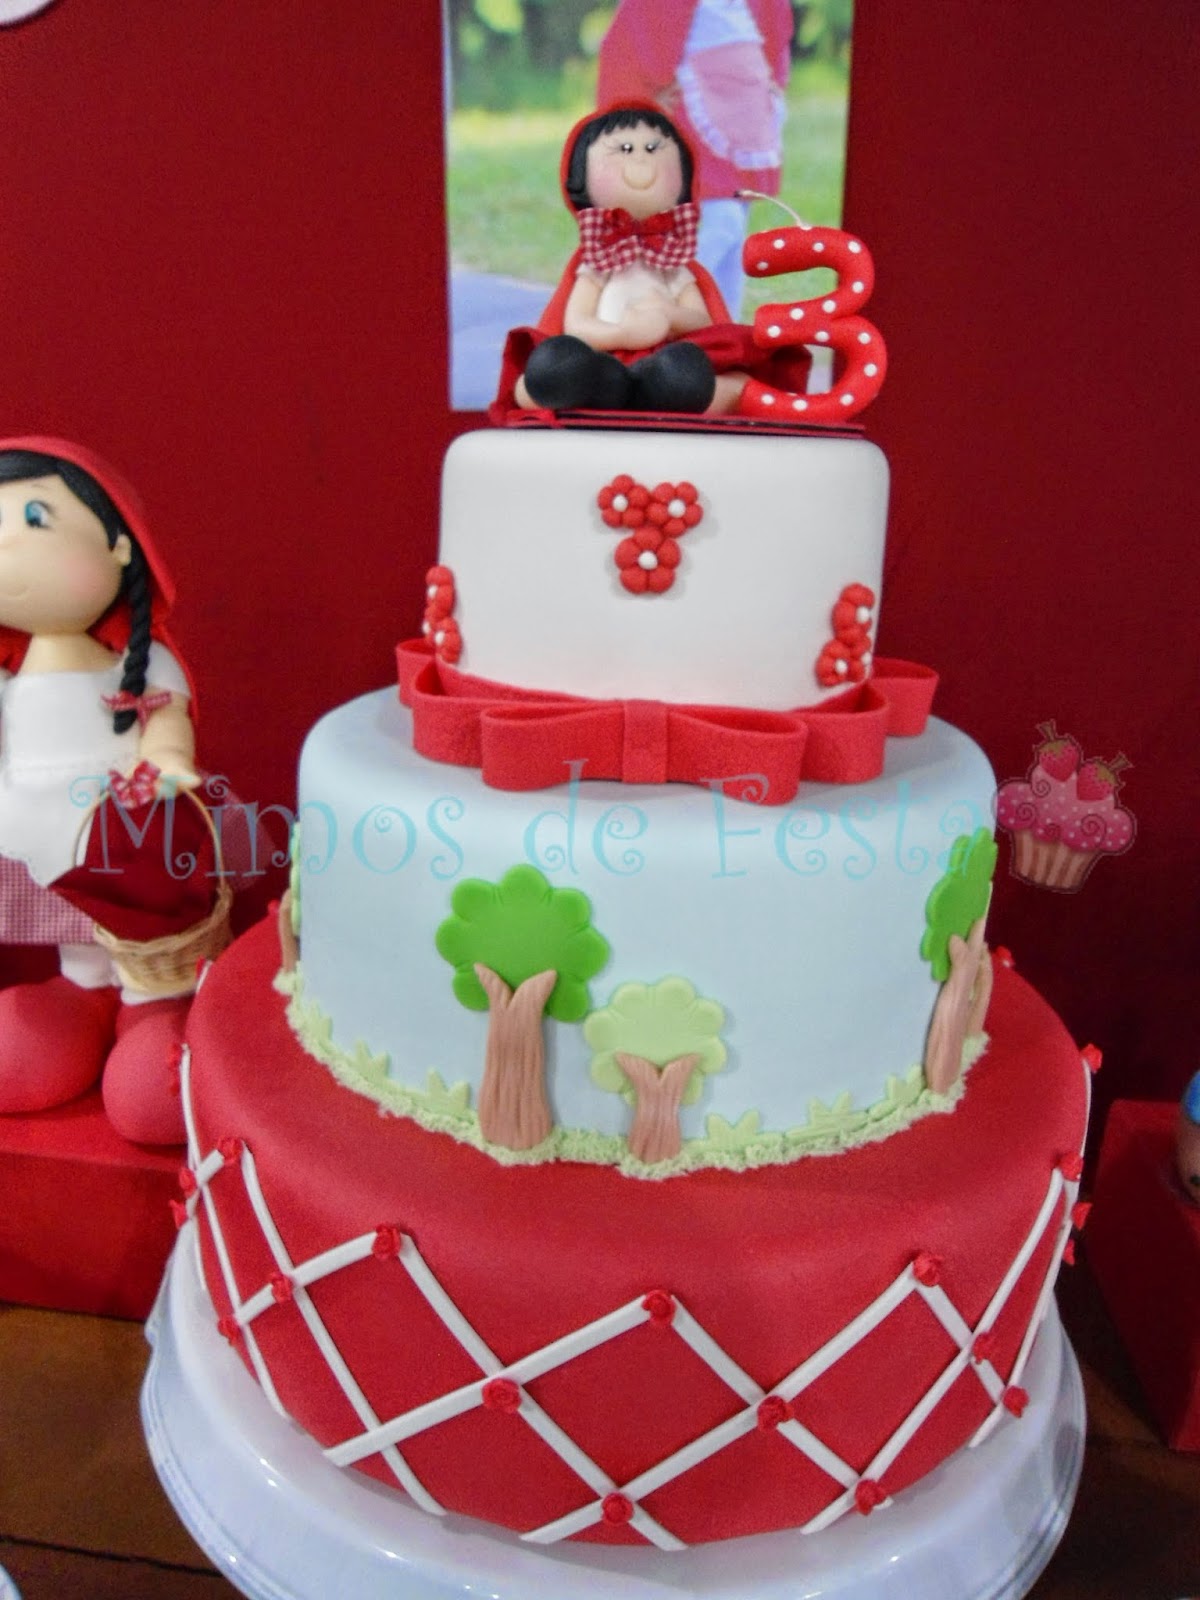 Bolo da Chapeuzinho vermelho da Laura mini - Delicias Caseiras Festas e  Eventos